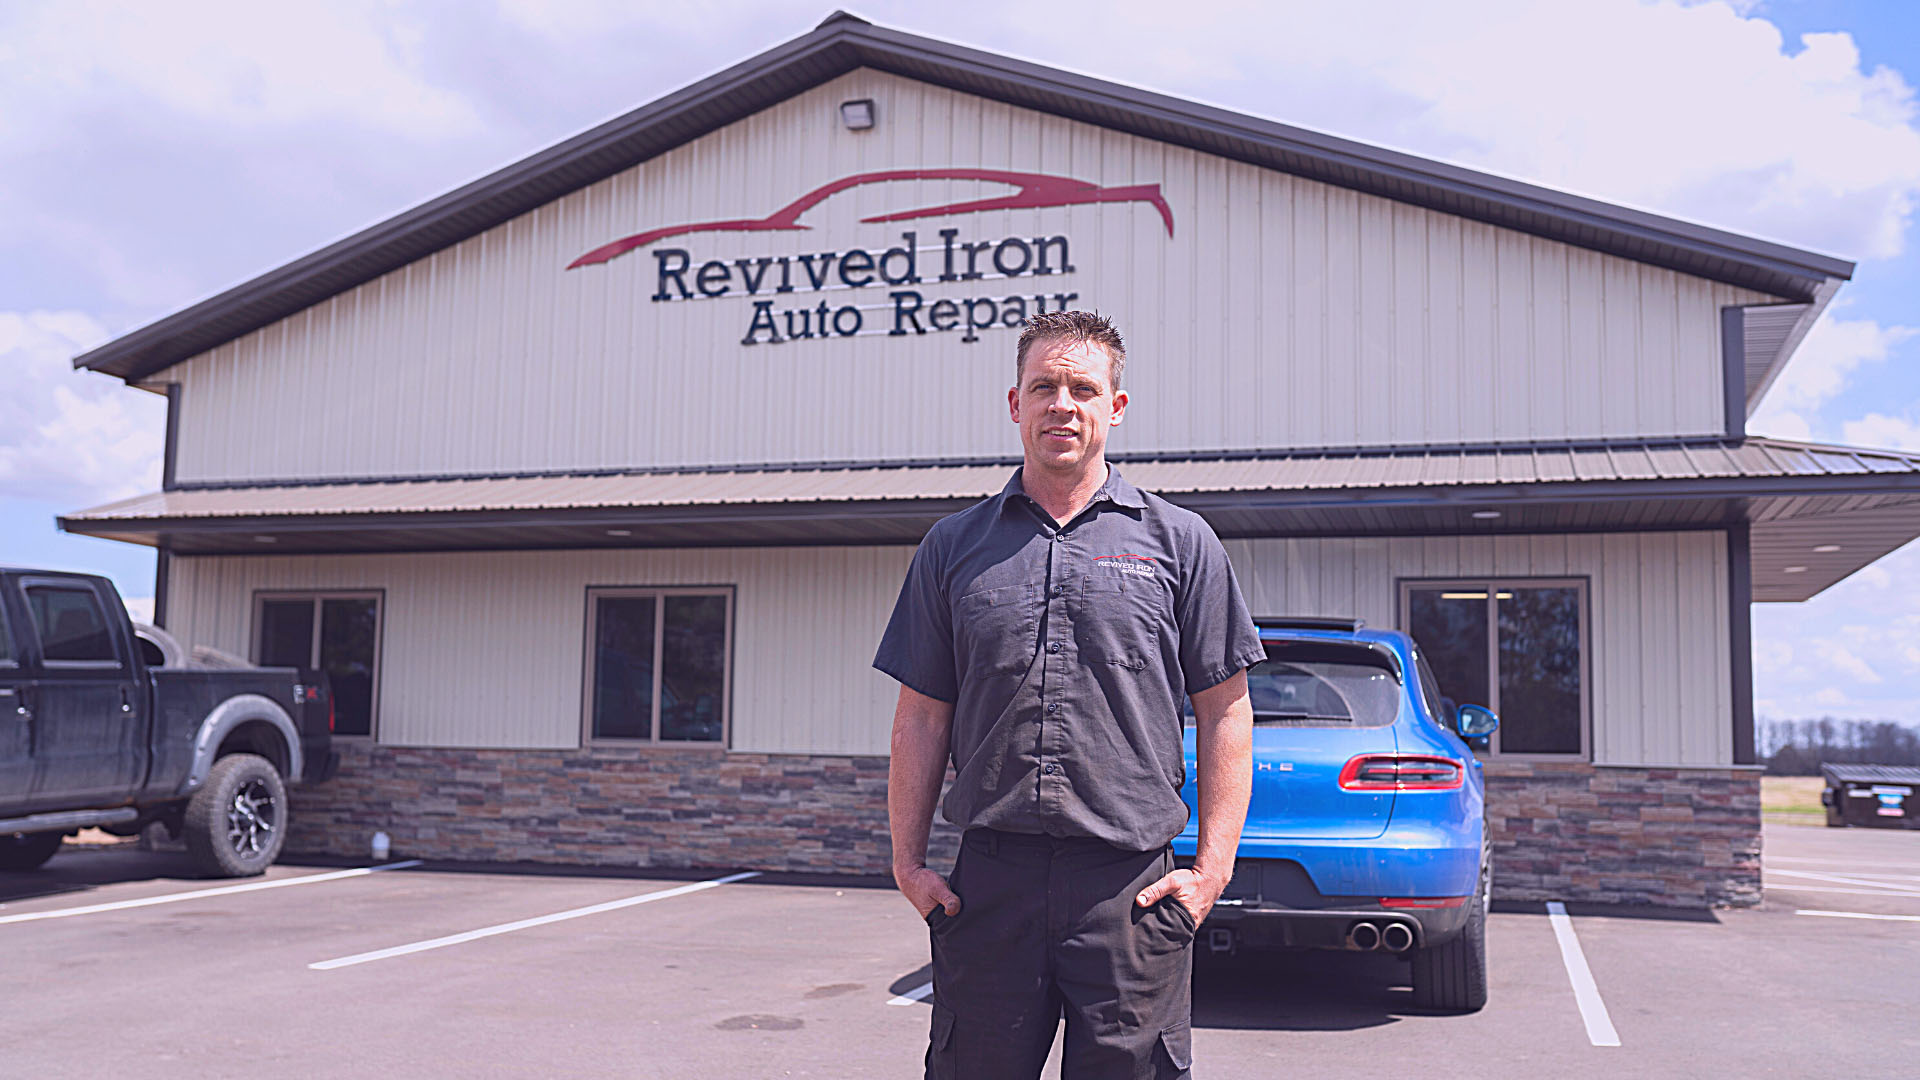 Revived Iron Auto Repair